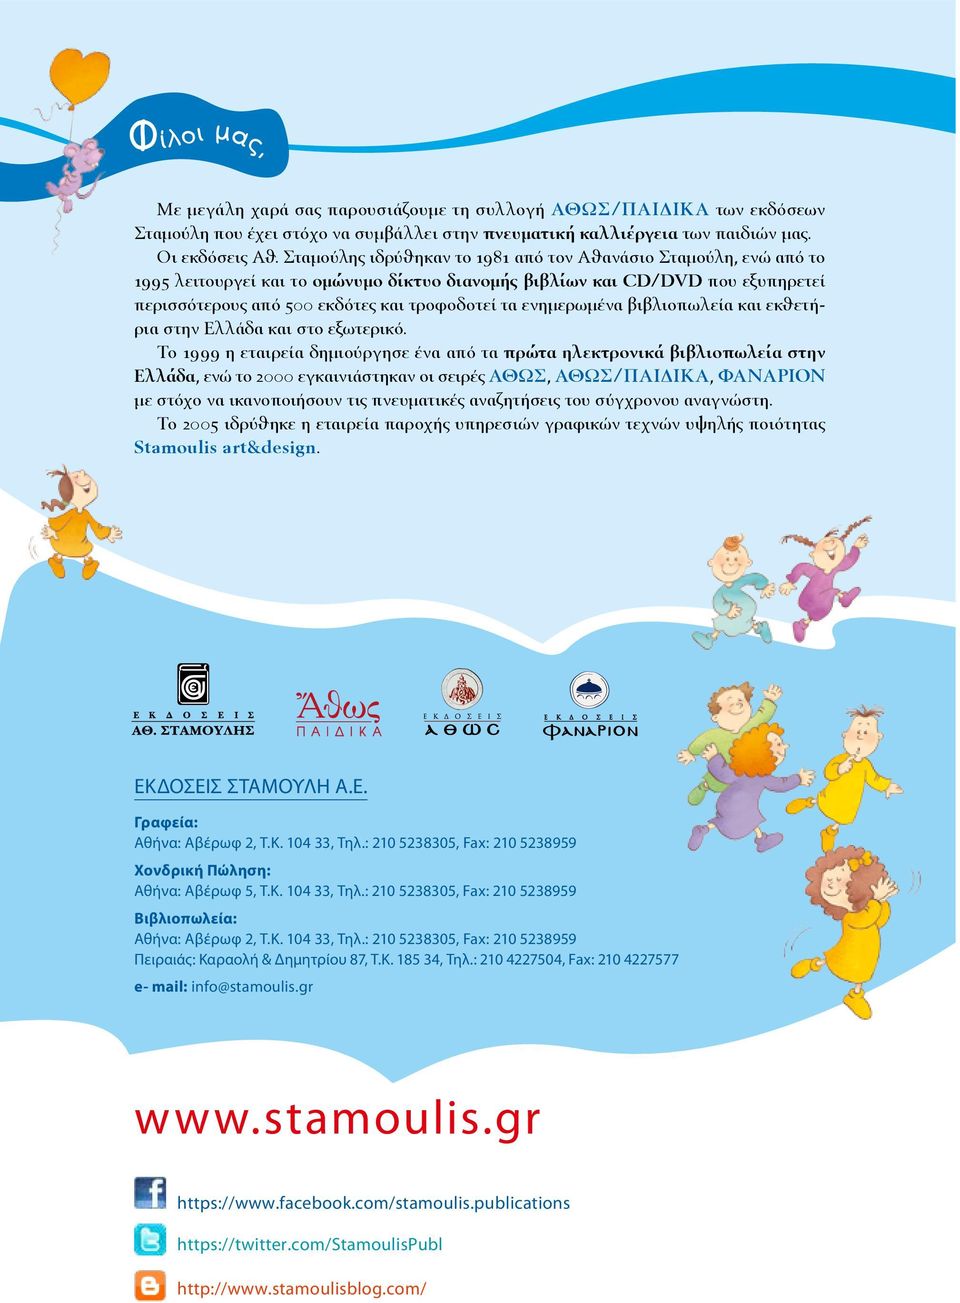 gr www.stamoulis.gr Στo δηµιουργικό γραφείο Stamoulis art&design συνδυάζουµε την εµπειρία στην τέχνη και την άριστη γνώση των νέων τεχνολογιών.